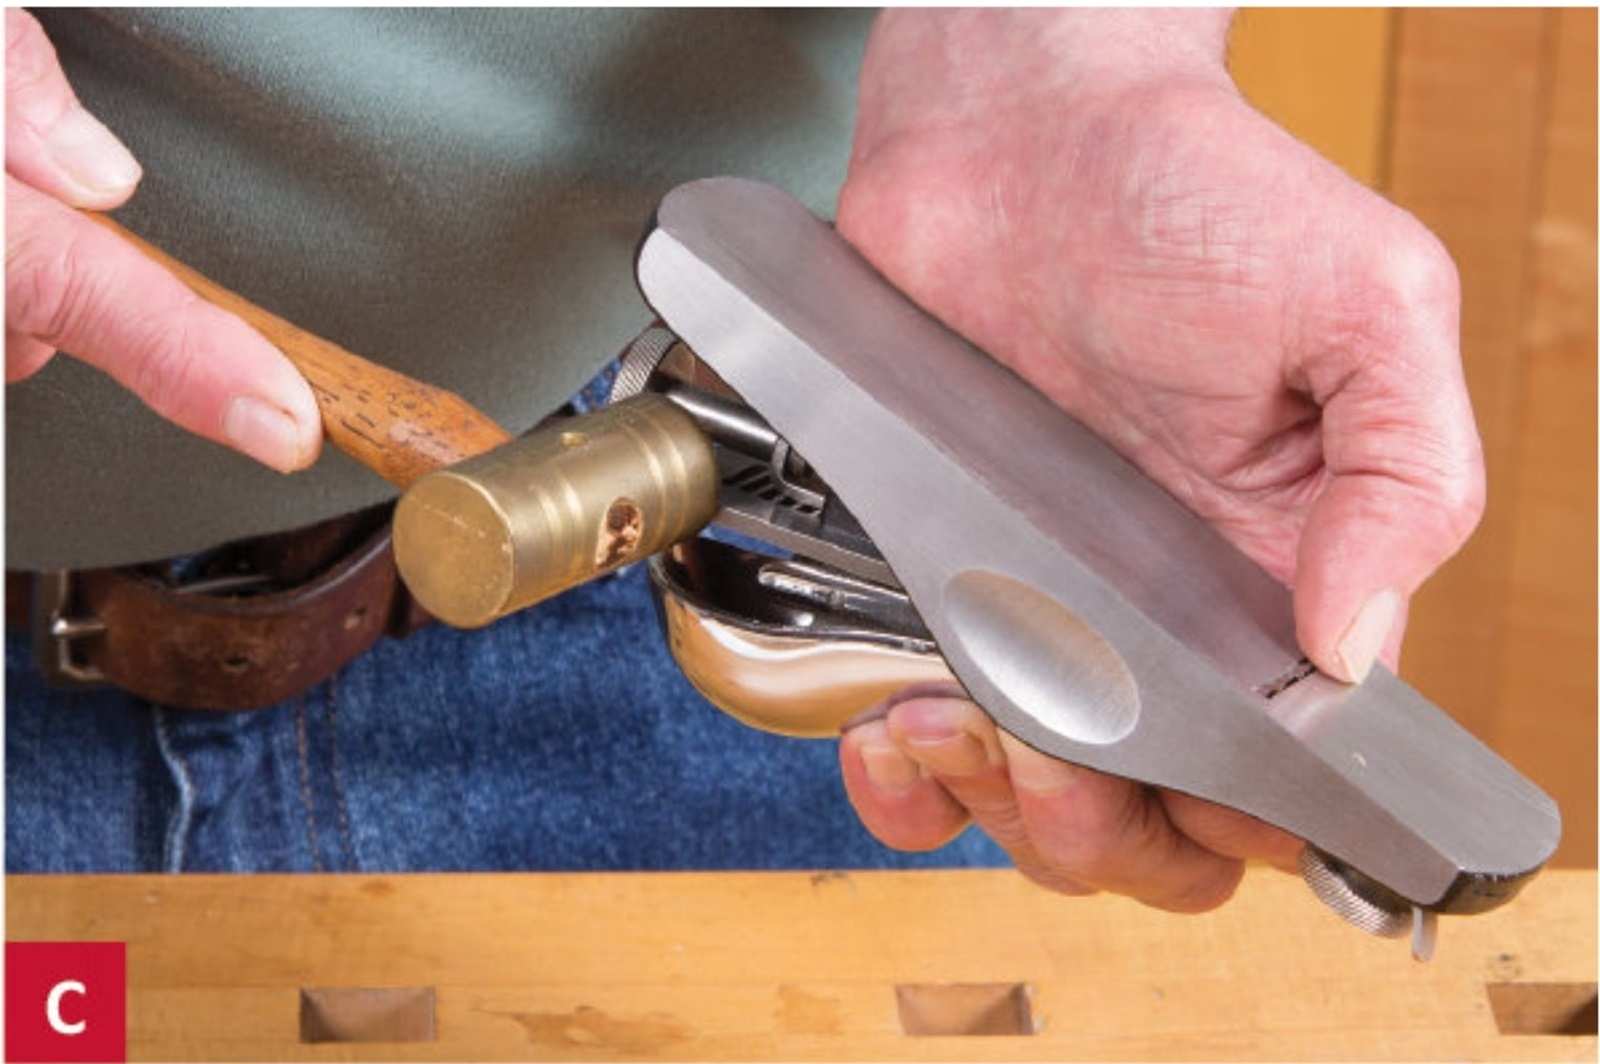 Để điều chỉnh lưỡi dao theo phương ngang, hãy sử dụng một cái búa nhỏ bằng đồng hoặc gỗ để gõ nhẹ nó về phía cạnh dao cho đến khi lưỡi dao phô đều ra ở rãnh cắt.